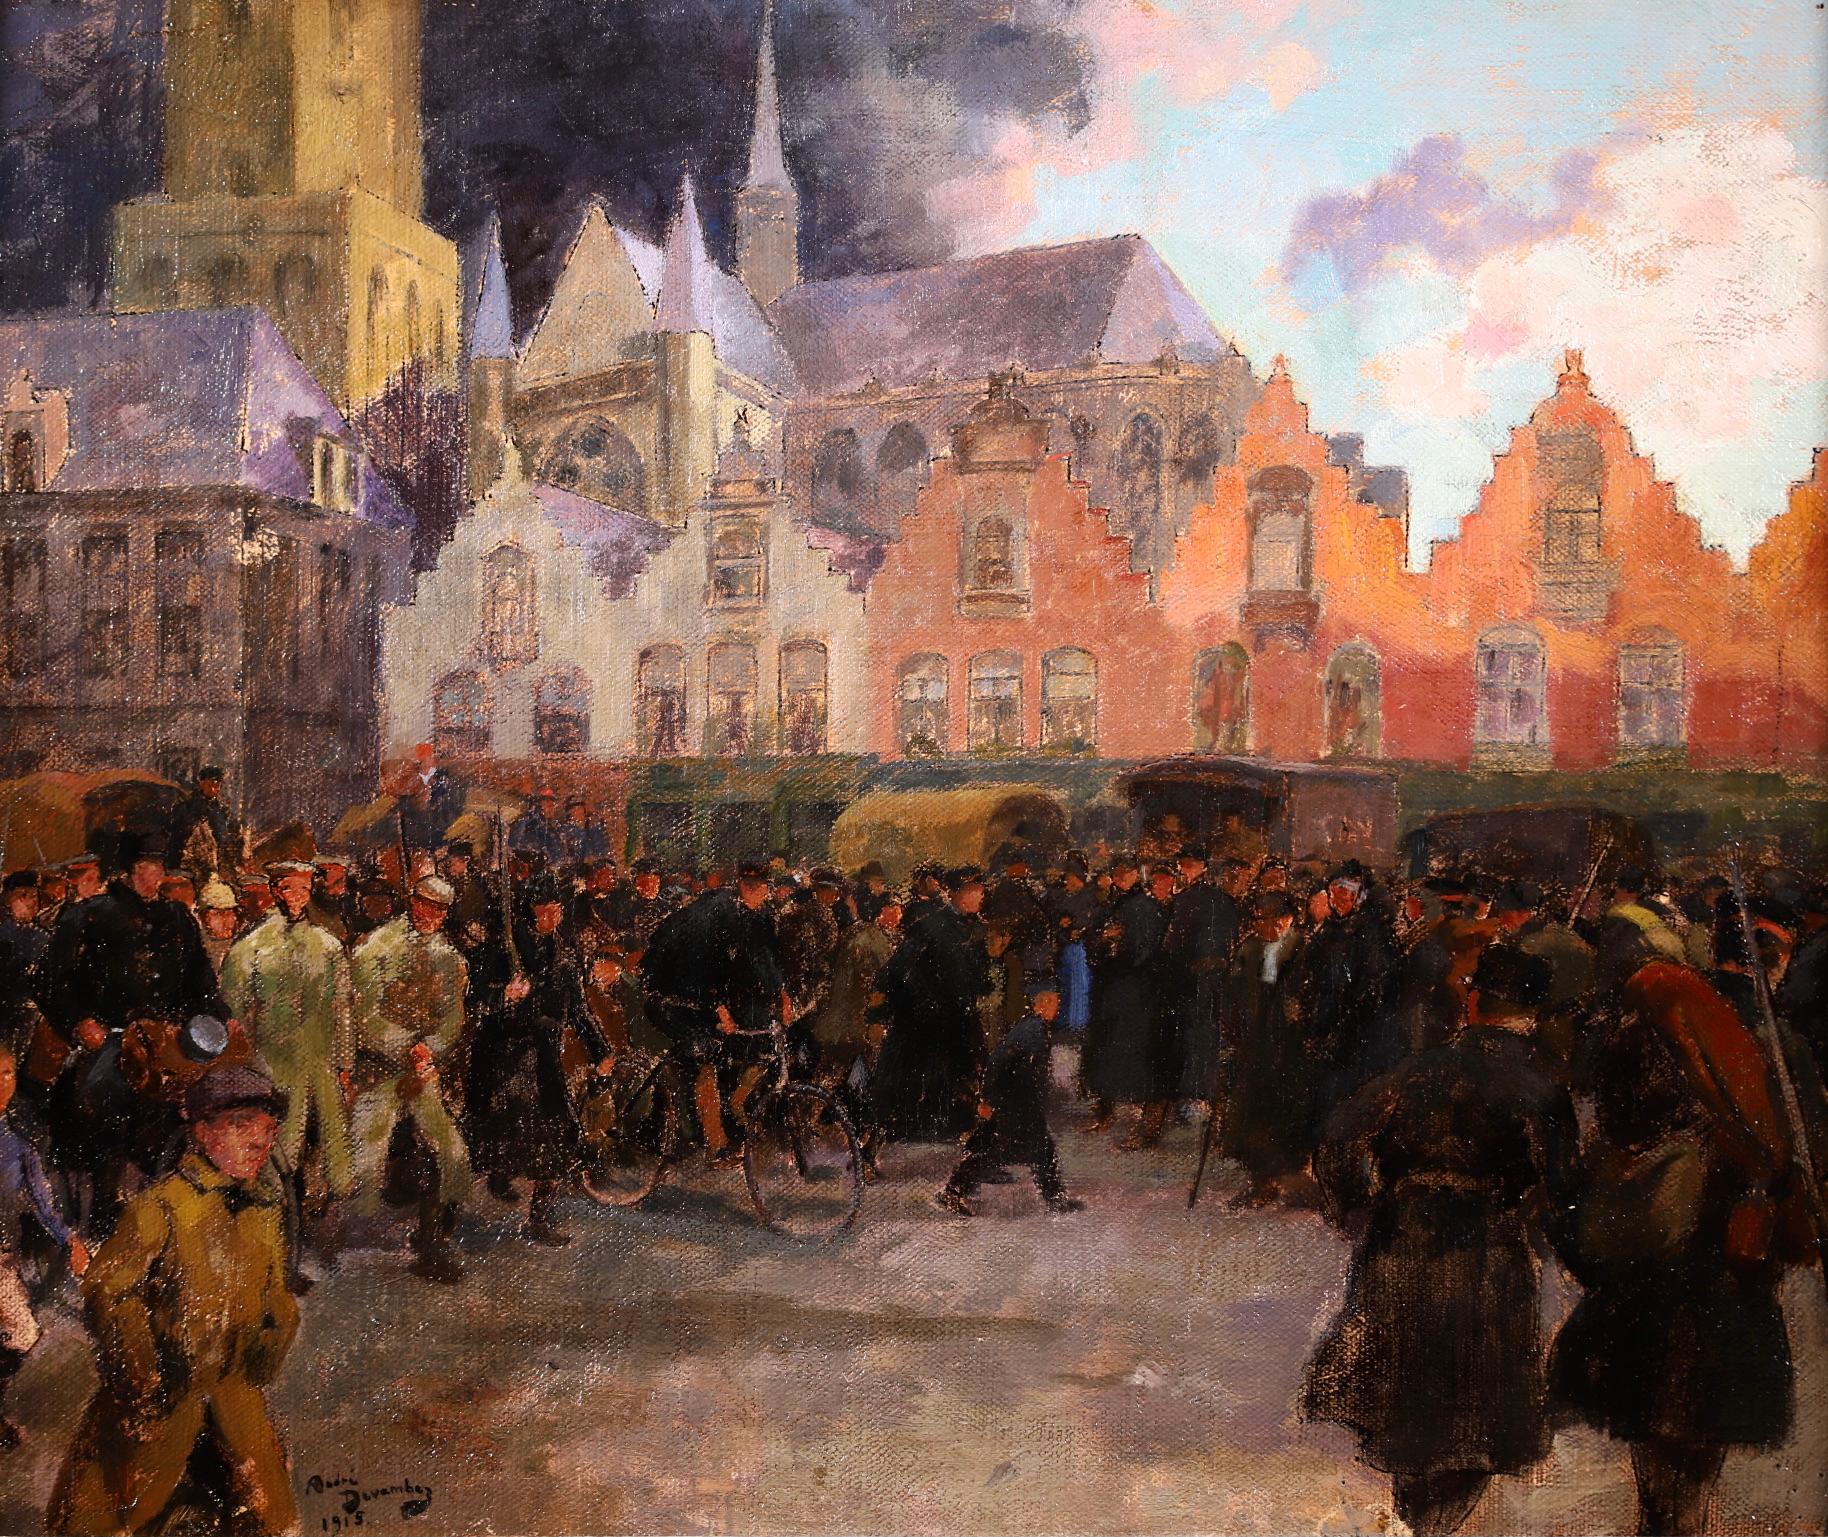 Une huile sur toile historique et merveilleusement peinte par le peintre et illustrateur impressionniste français André Devambez. Cette œuvre représente le sujet des soldats se rassemblant à Ypres et se dirigeant vers la ligne de front. Devambez